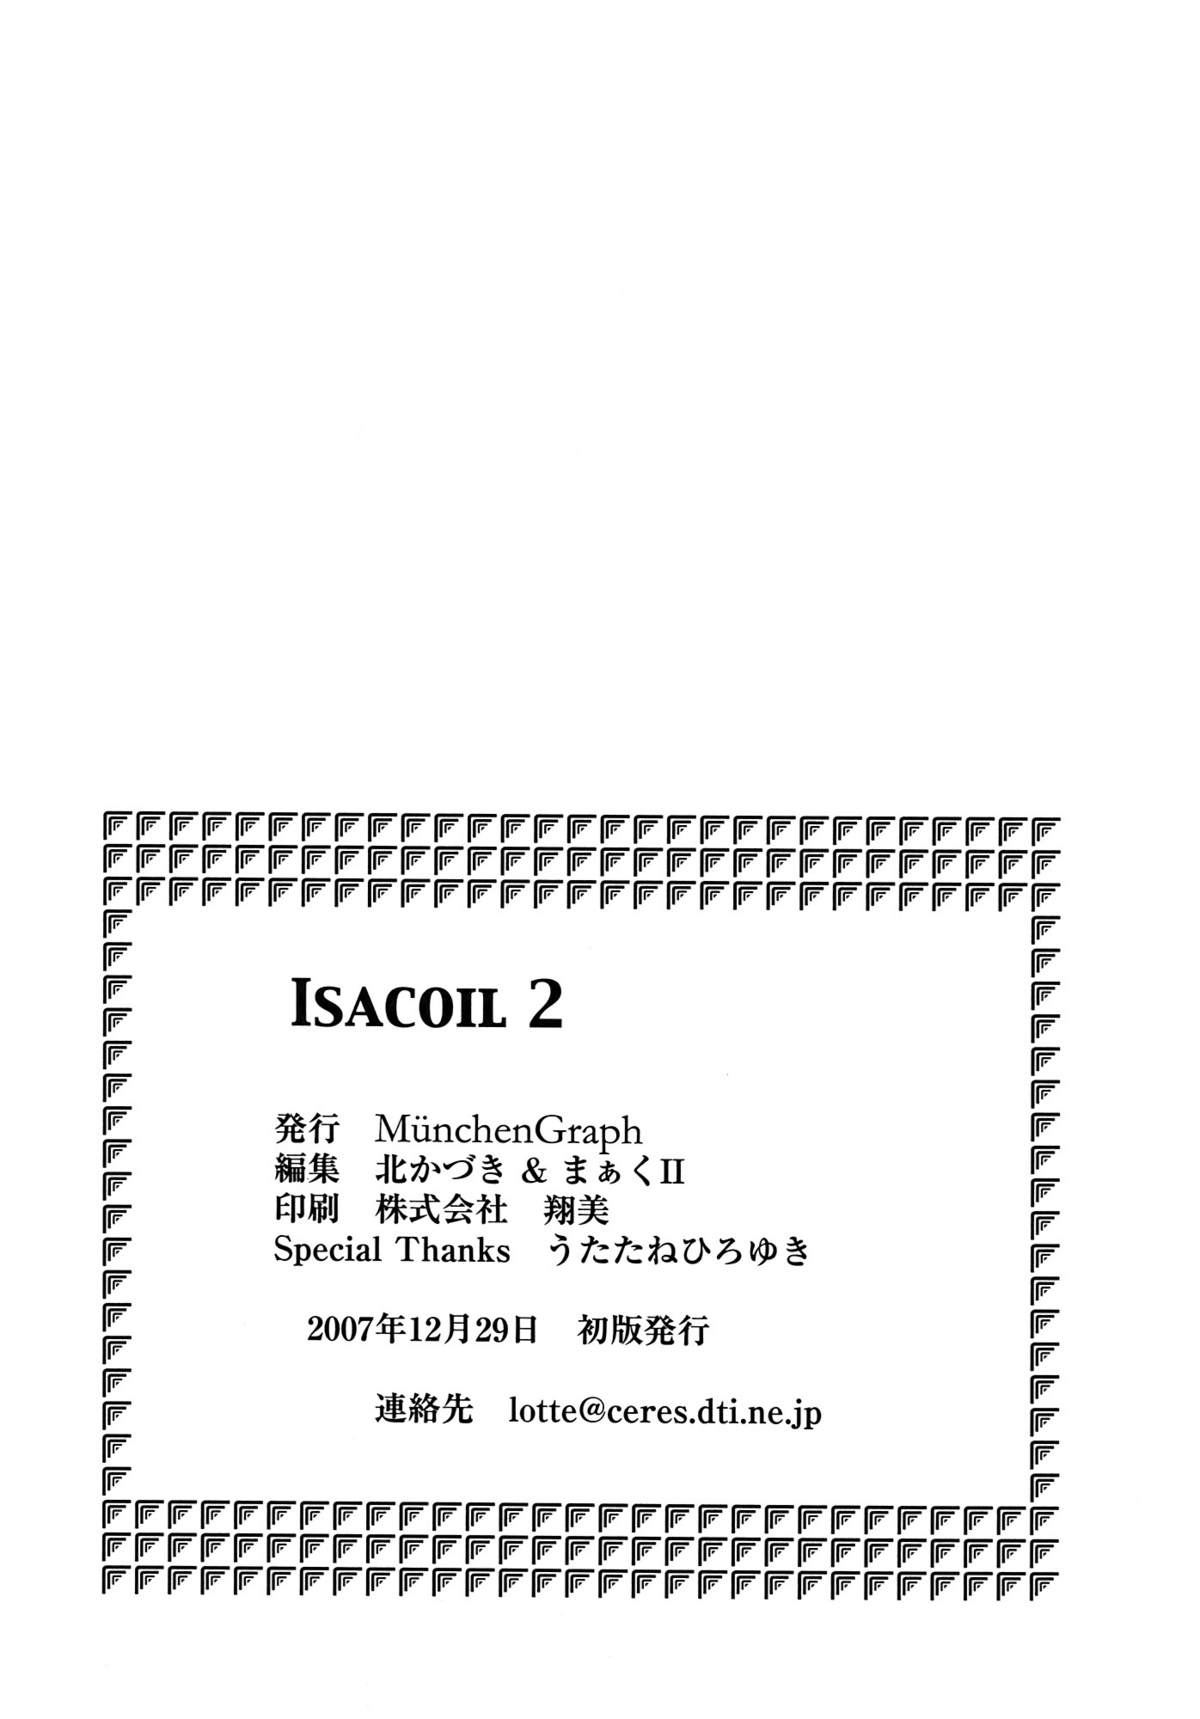 (C73) (同人誌) [Munchen Graph (北かづき & まぁくII)] Isacoil 2 (電脳コイル)